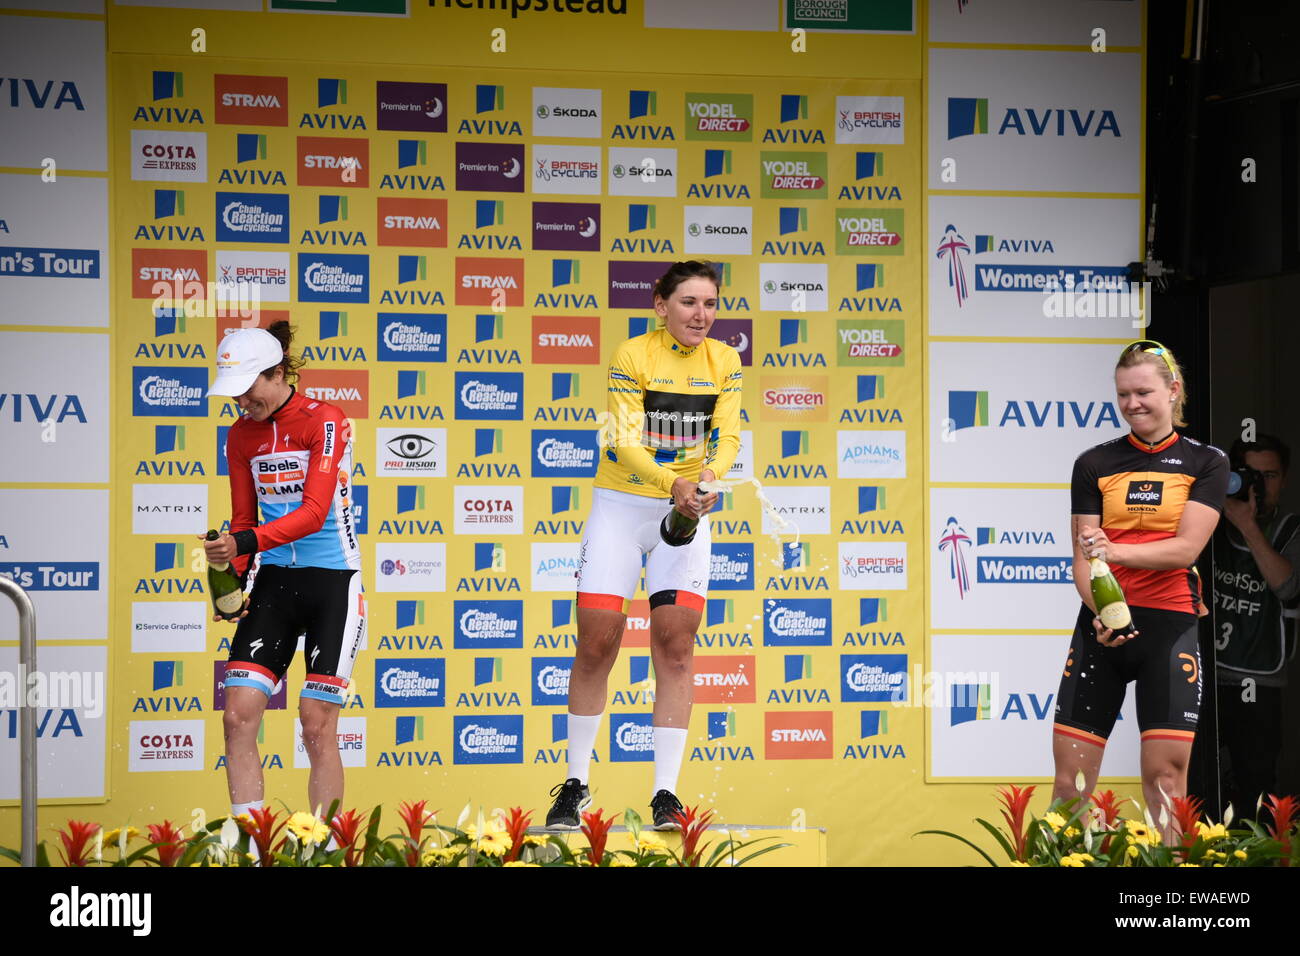 Aviva WT Frauen Cycling Tour Präsentation der Gewinner am Ende eine 5-stufige 5-Tages-Veranstaltung im Juni 2015 in England UK statt. Stockfoto